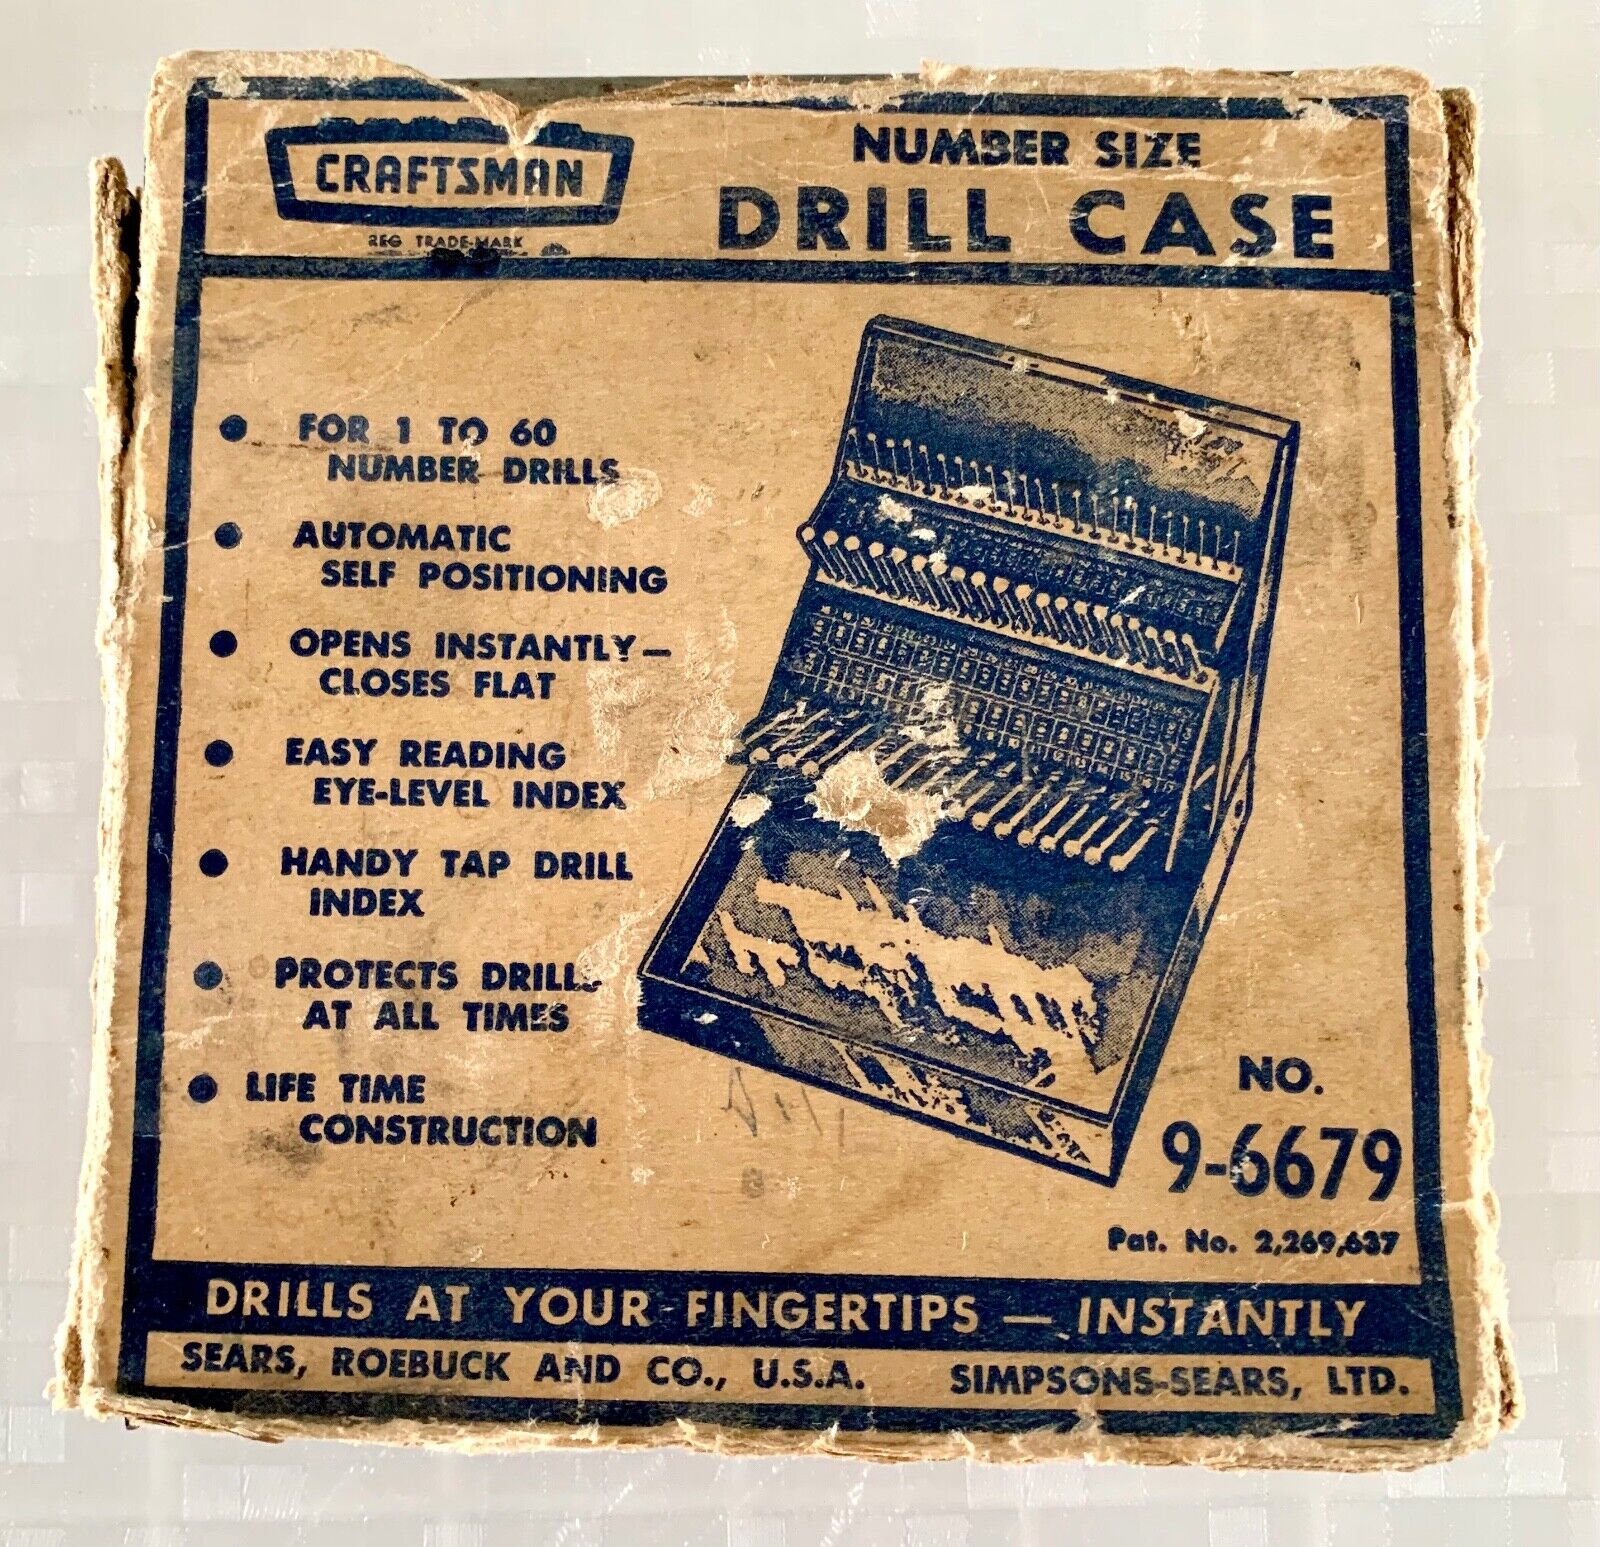 Craftsman Sears Roebuck Vintage Drill Case No. 9-6679